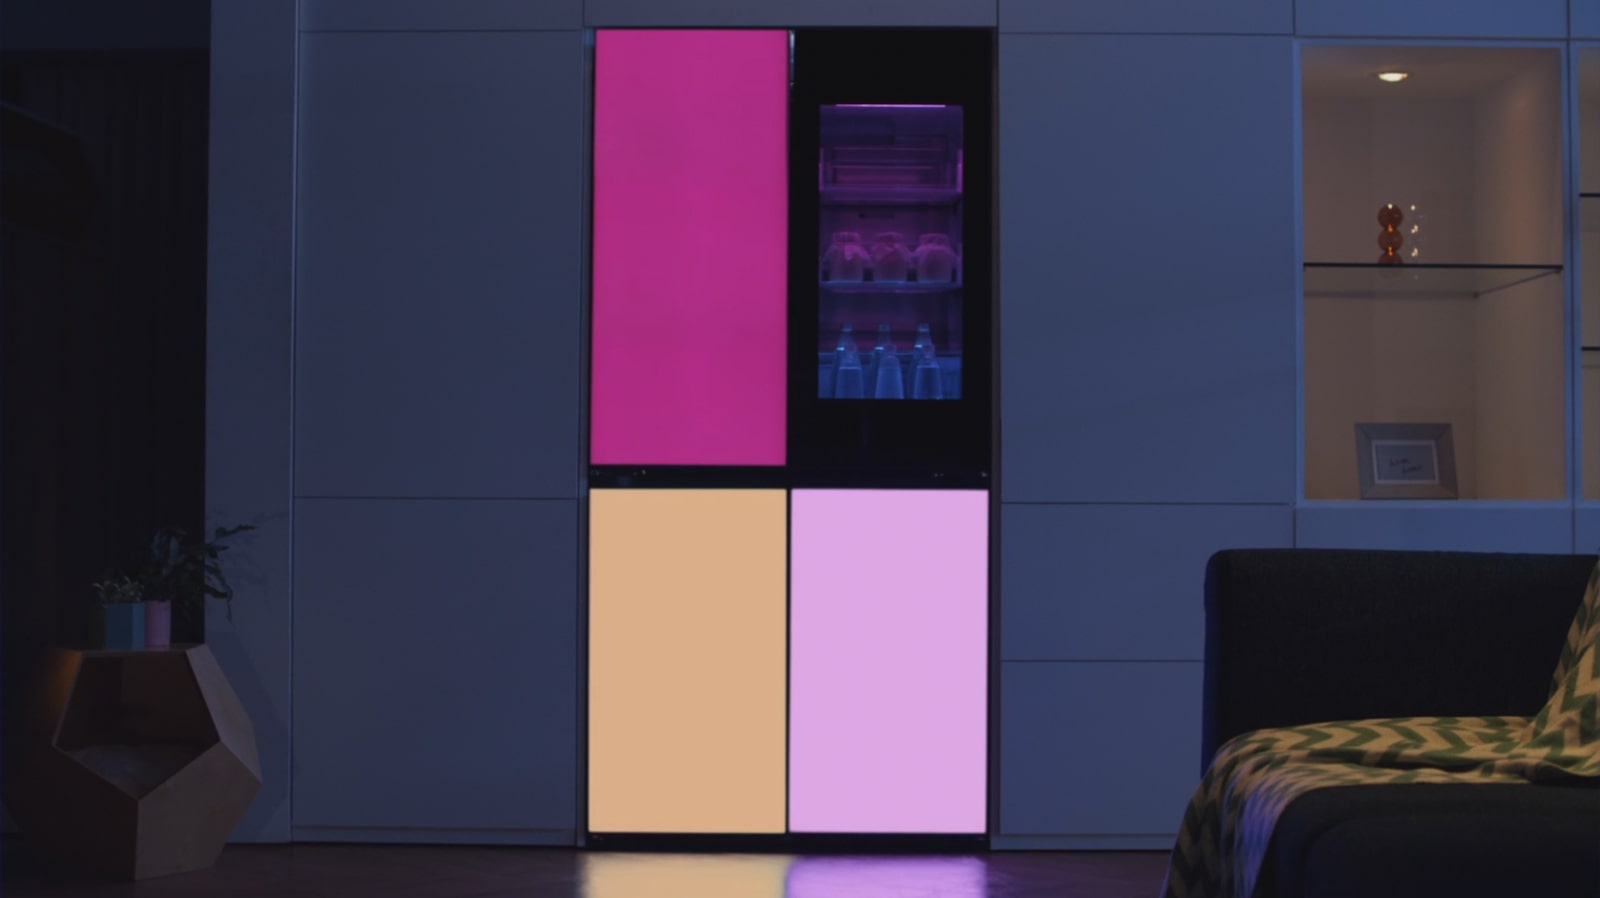 Le réfrigérateur change de couleur grâce à l'application LG ThinQ TM